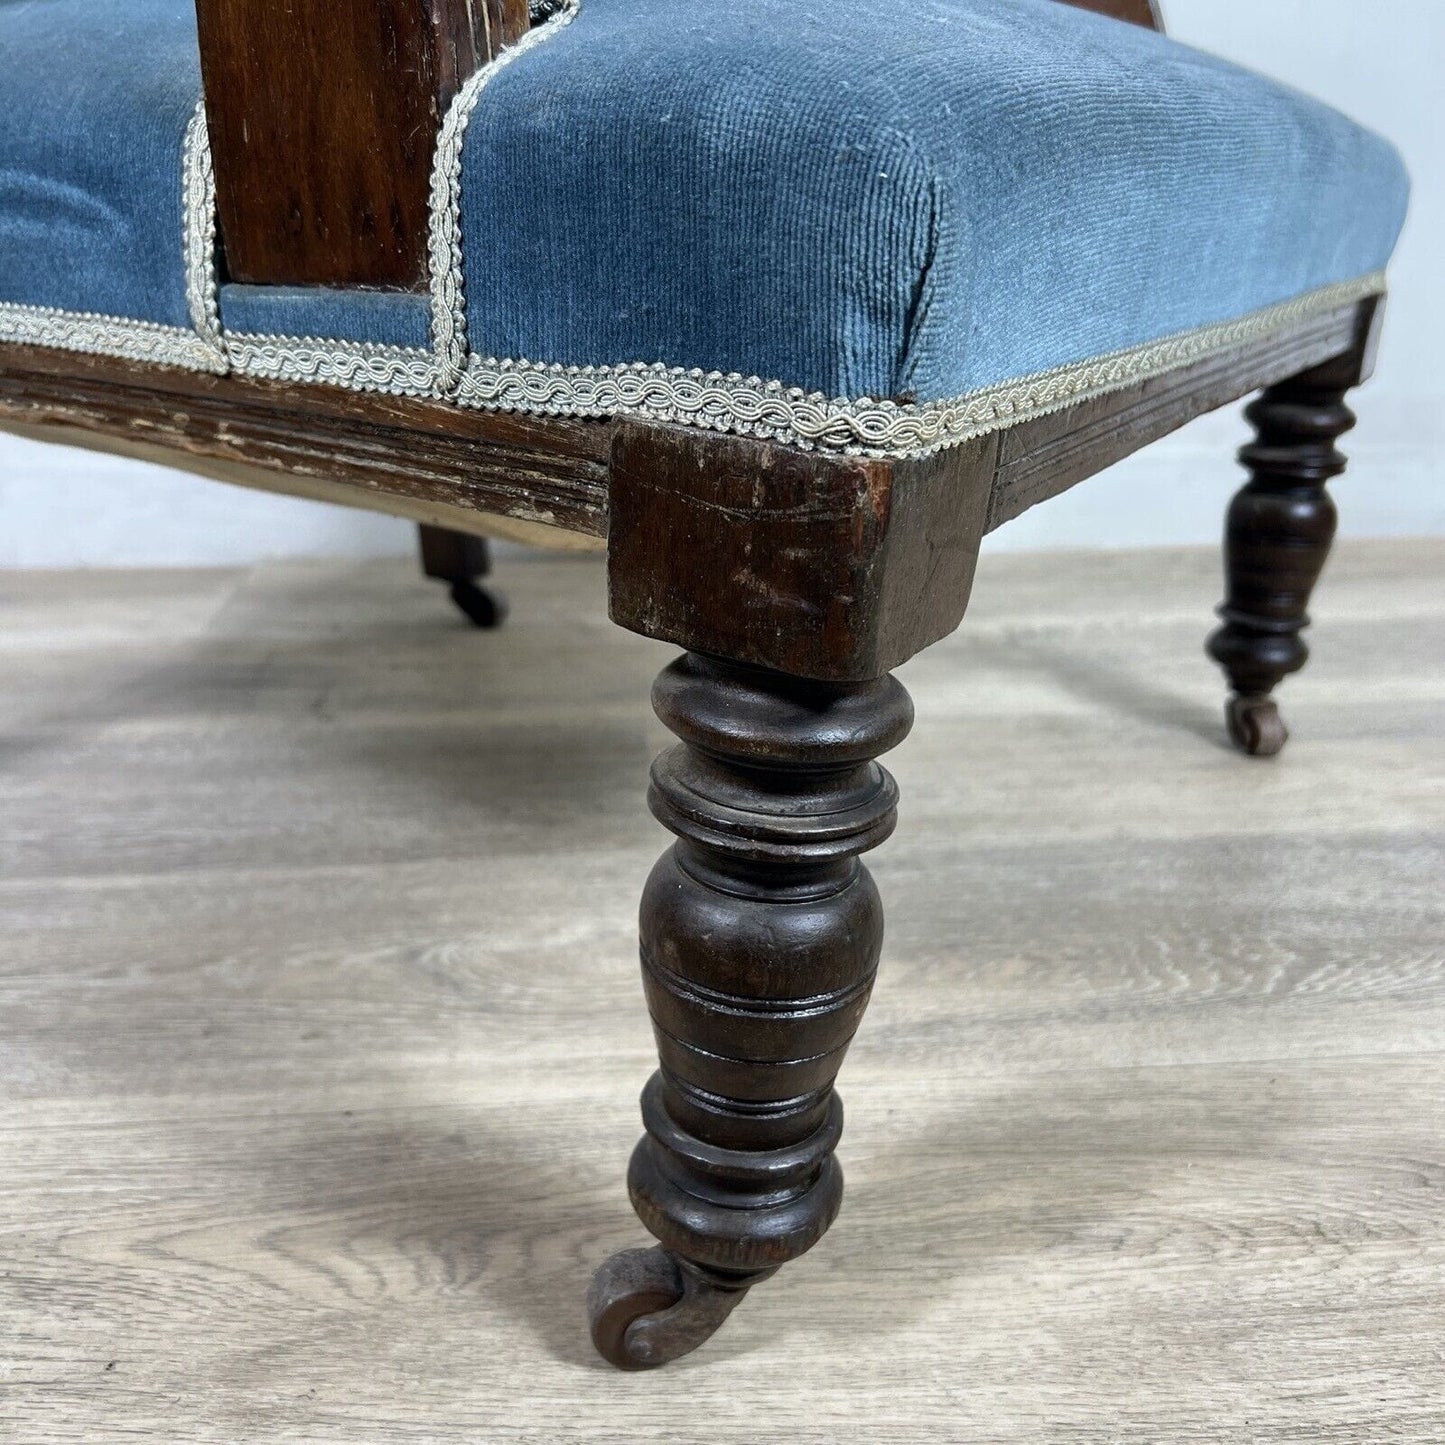 Antica sedia inglese imbottita con braccioli poltrona in legno noce epoca 800 Categoria  Sedie